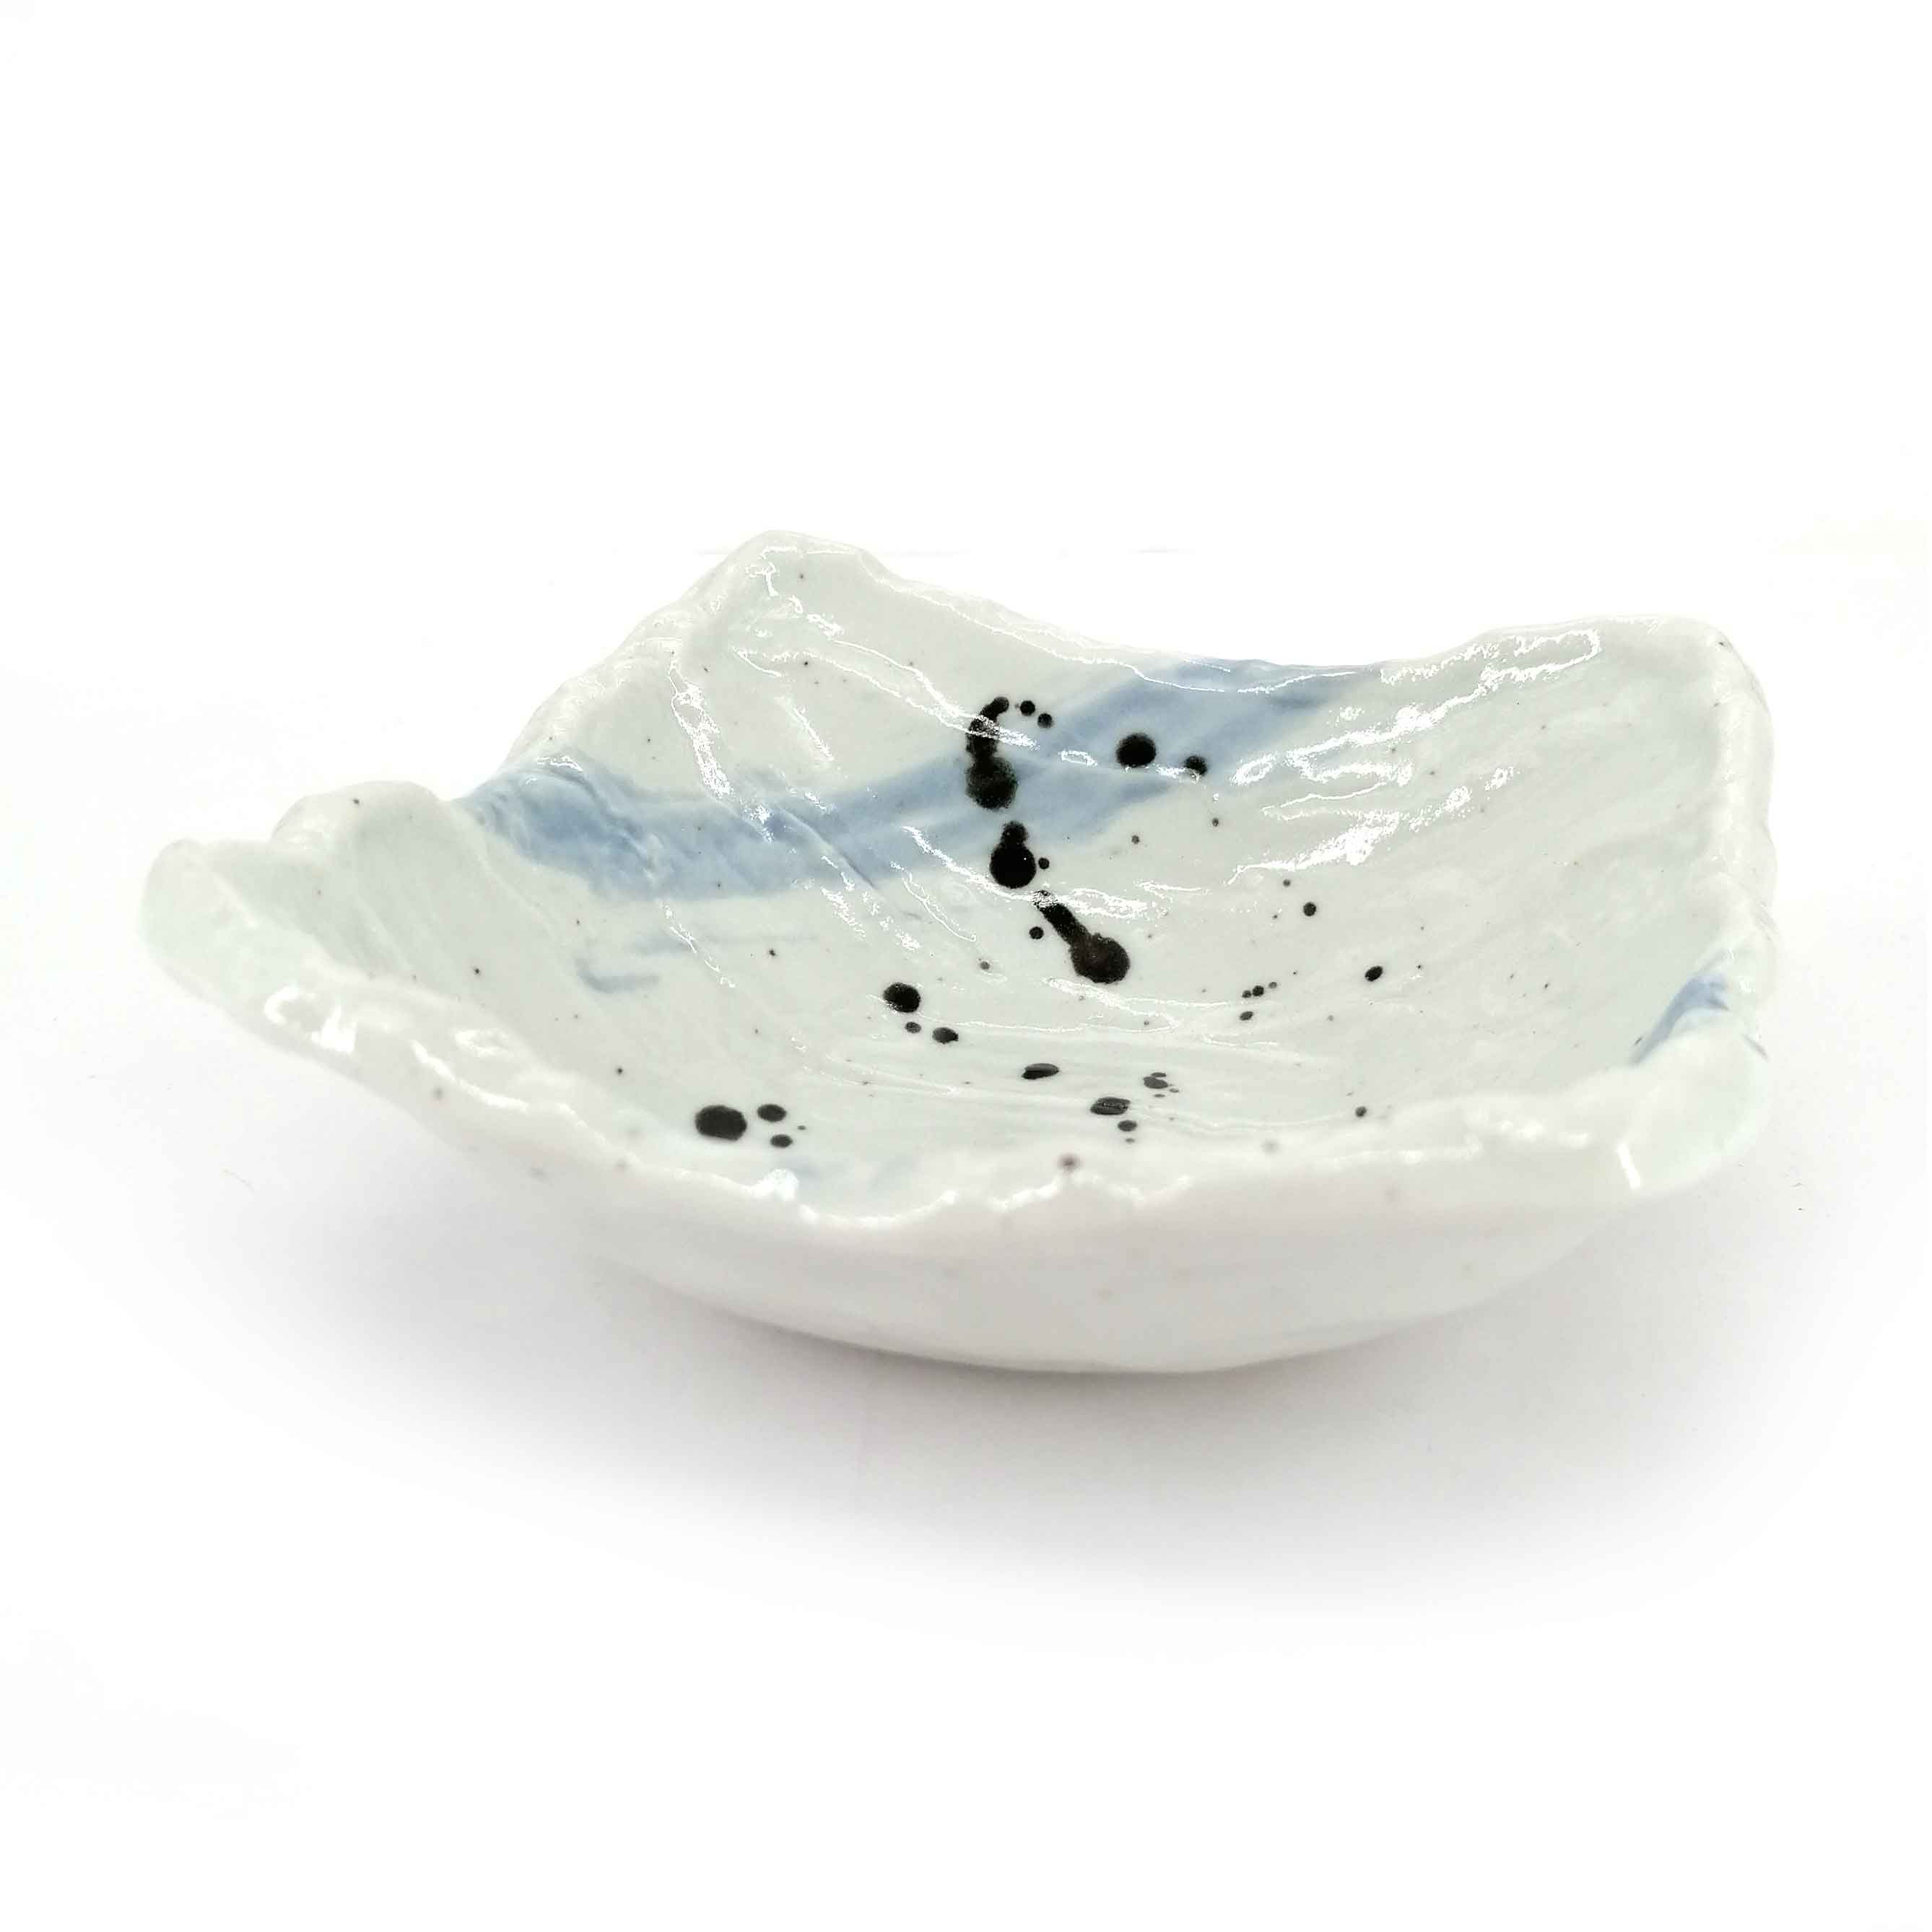 La peinture céramique – Ma jolie ceramique